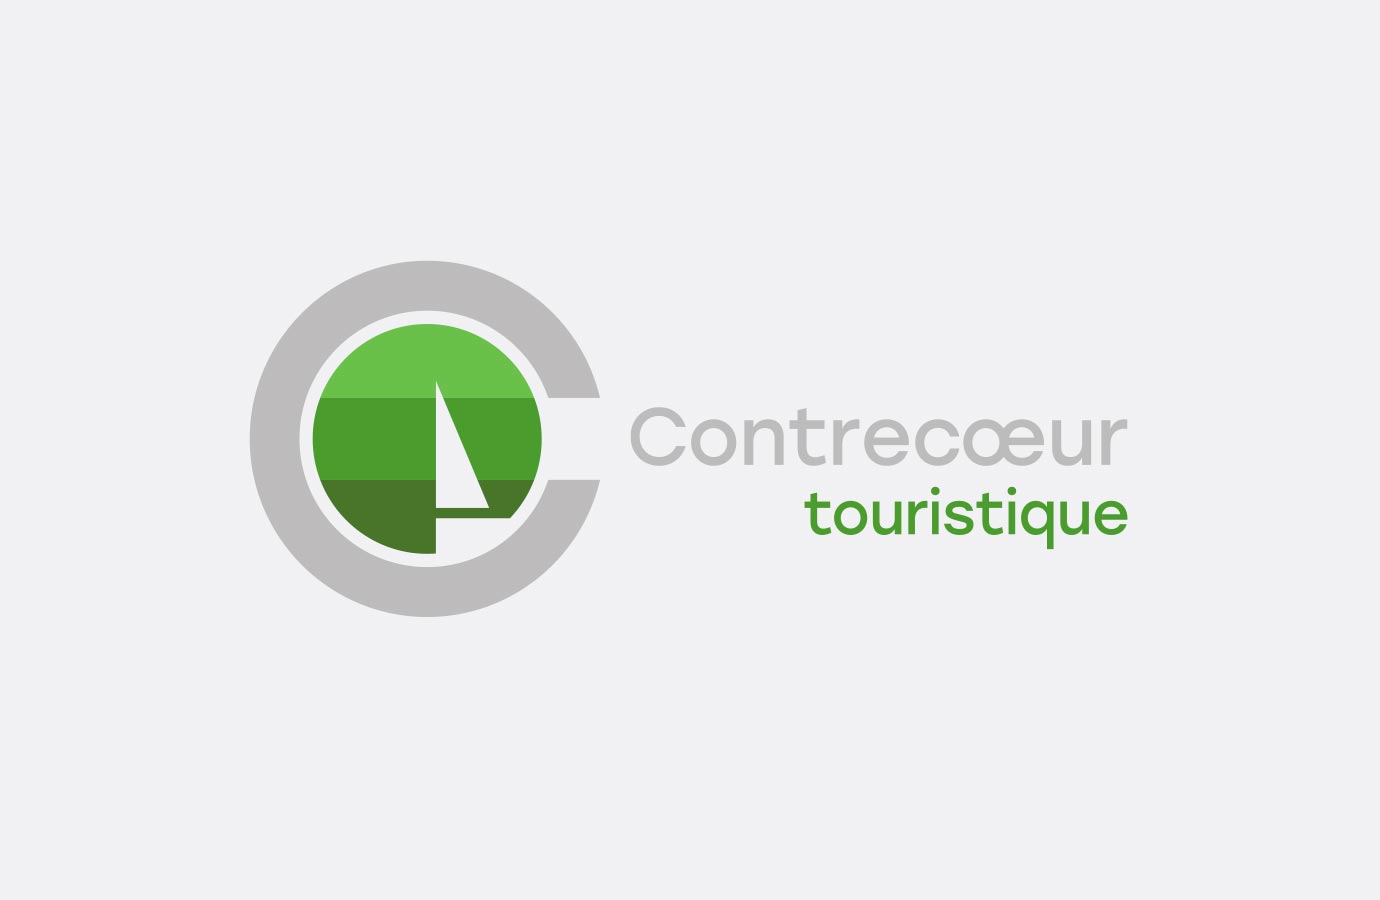 Logo Ville de Contrecœeur, secteur touristique